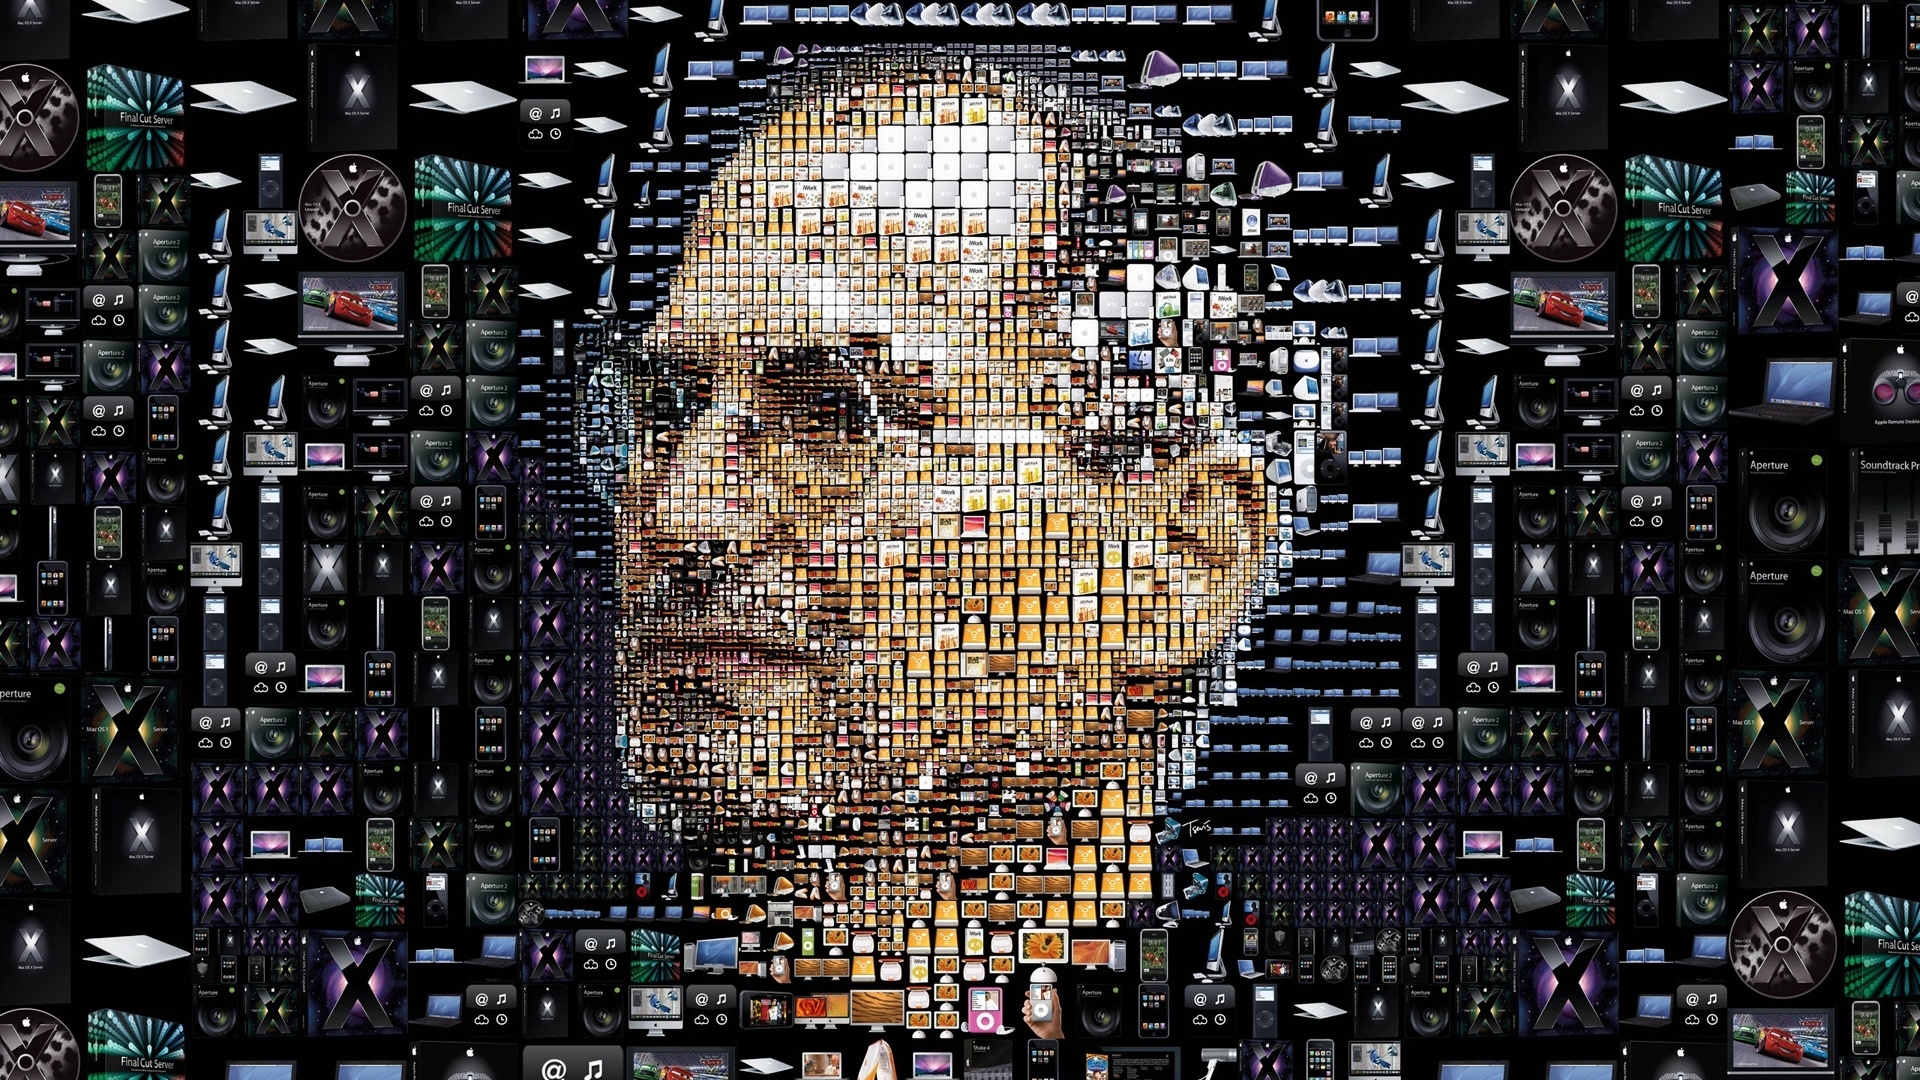 Steve Jobs for 1920 x 1080 HDTV 1080p resolution